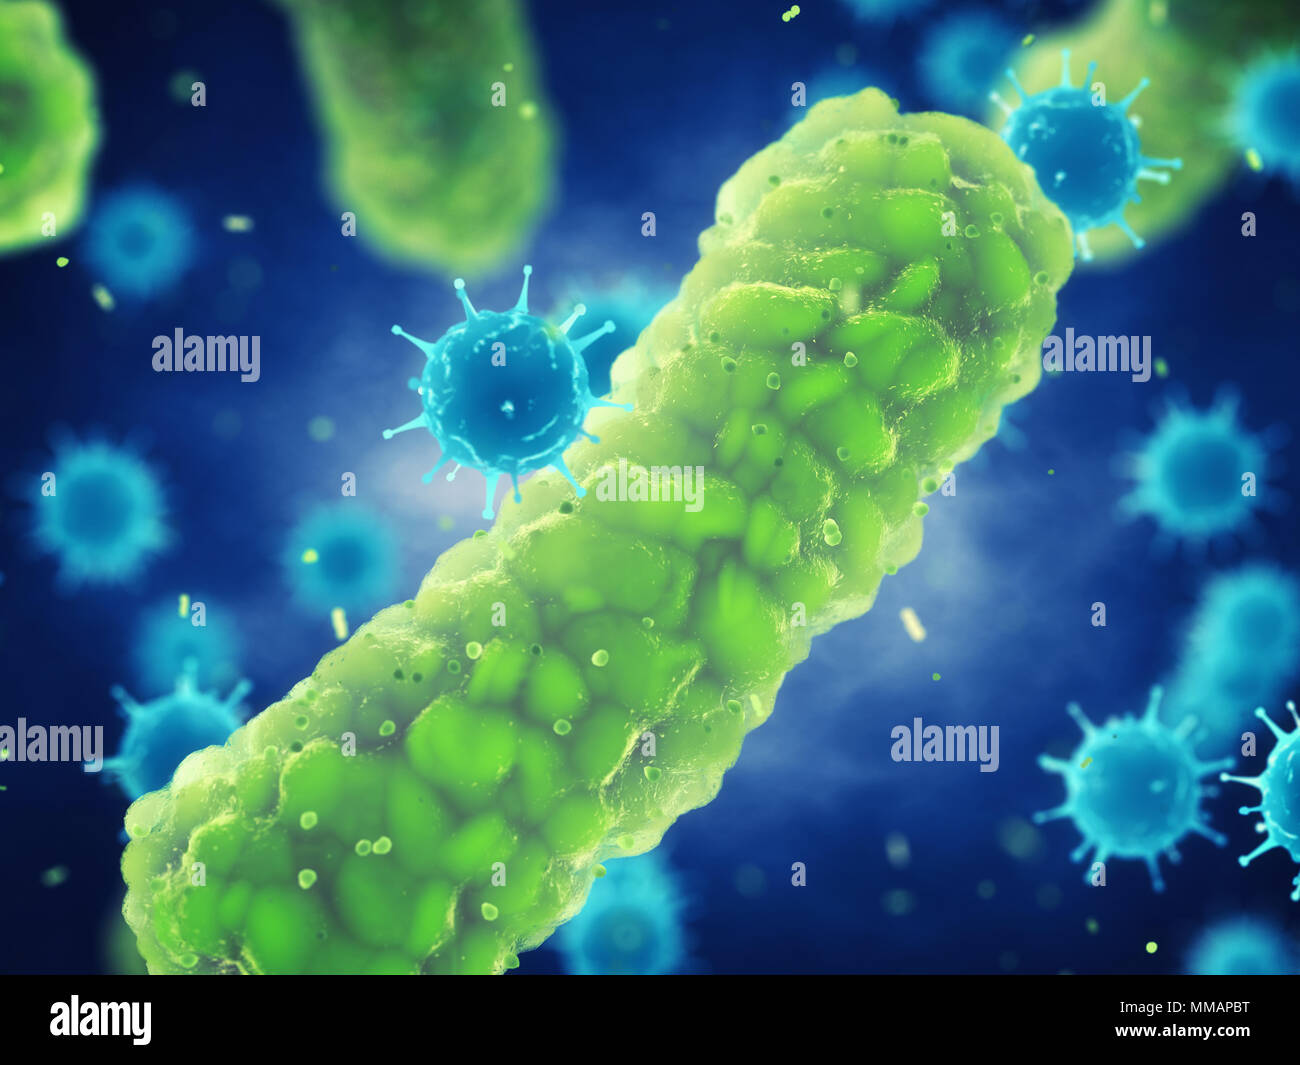 Les virus et bactéries pathogènes microscopiques , germes qui causent les maladies infectieuses, virales et l'infection bactérienne Banque D'Images